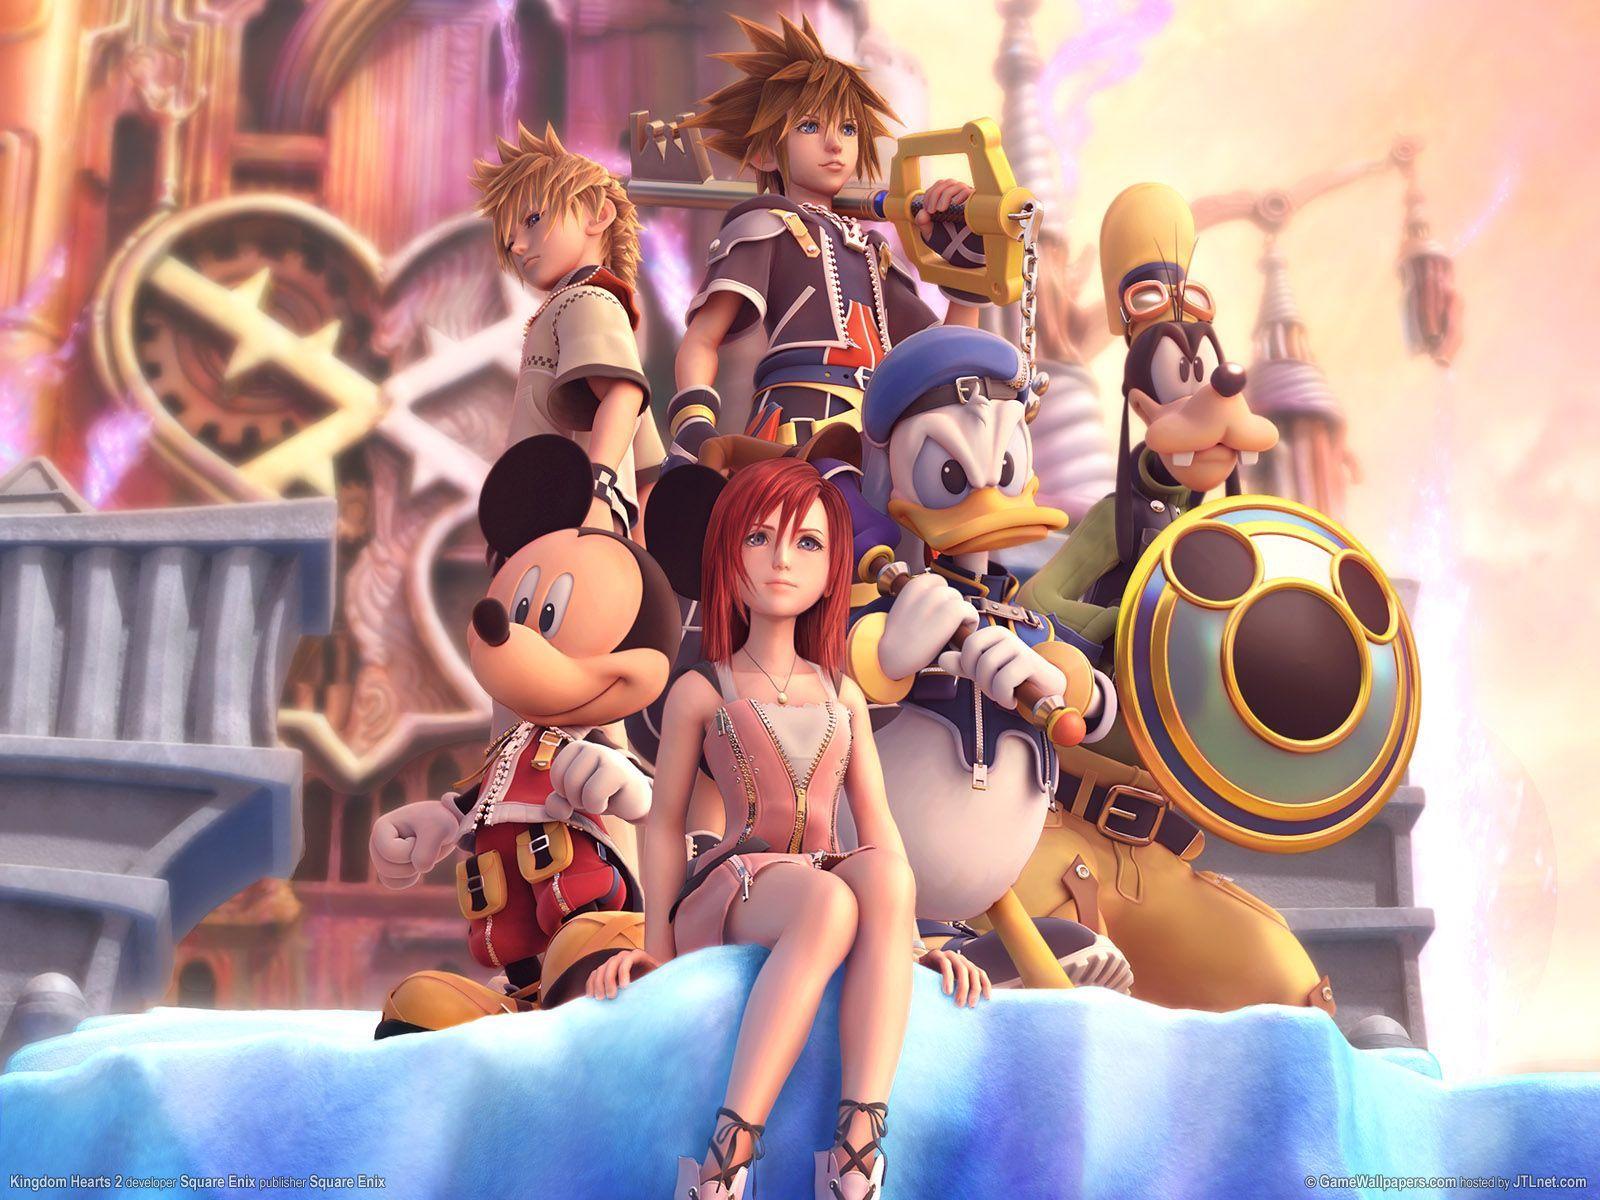 Kingdom Hearts 4 Release Date 